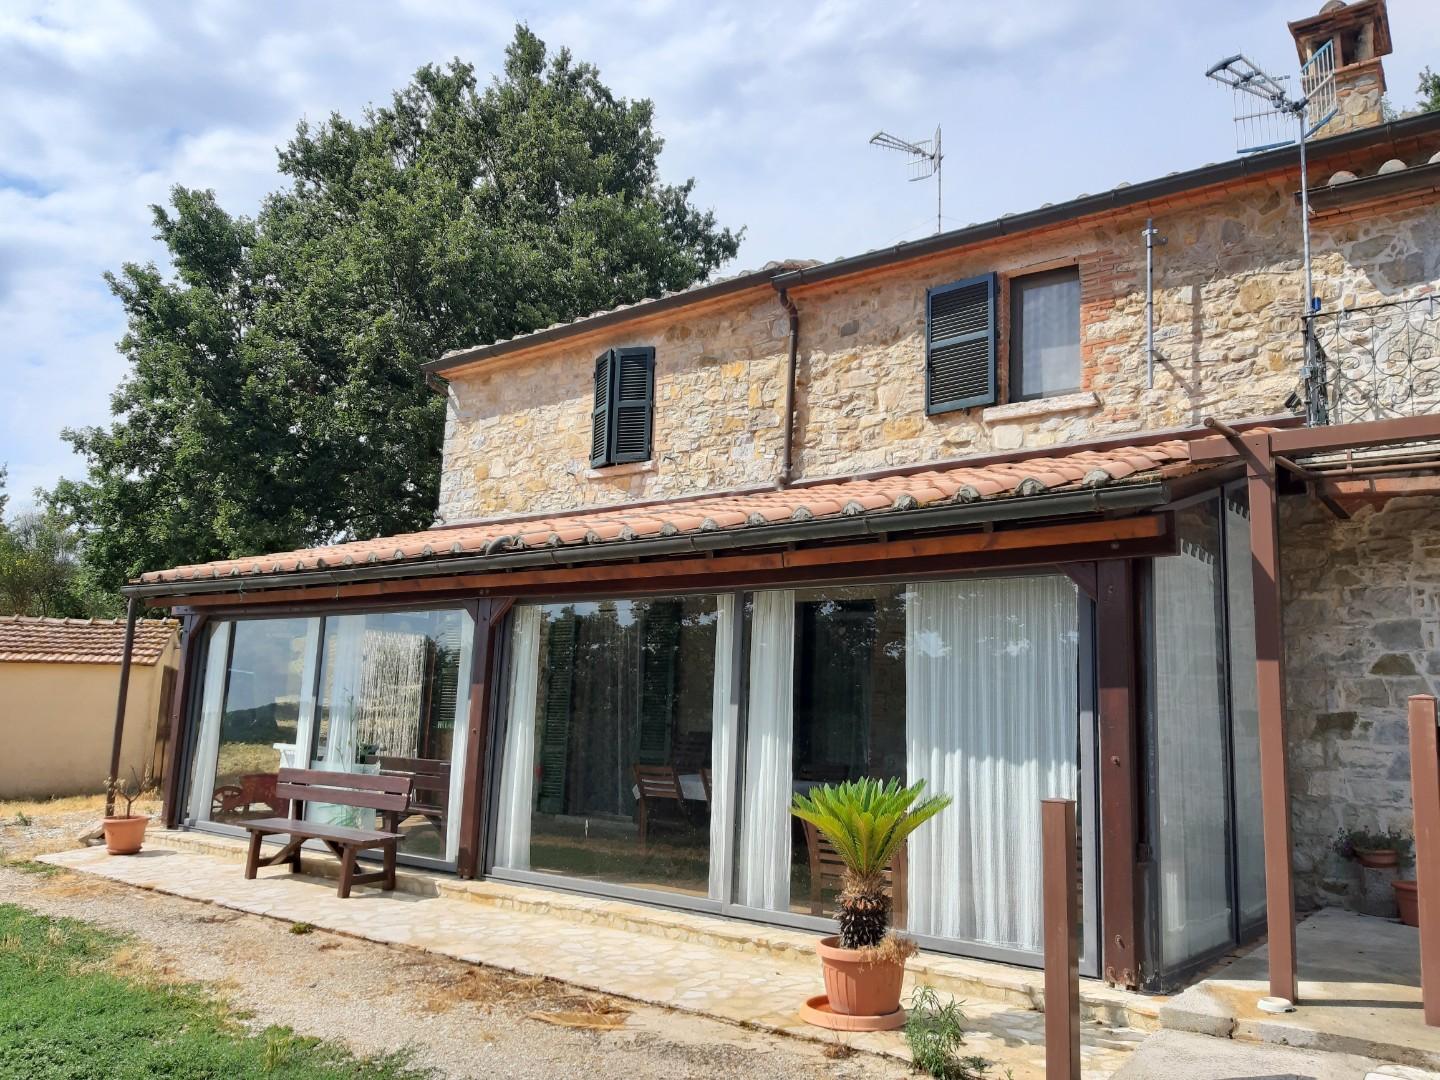 Rustico / Casale in vendita a Semproniano, 8 locali, prezzo € 300.000 | PortaleAgenzieImmobiliari.it